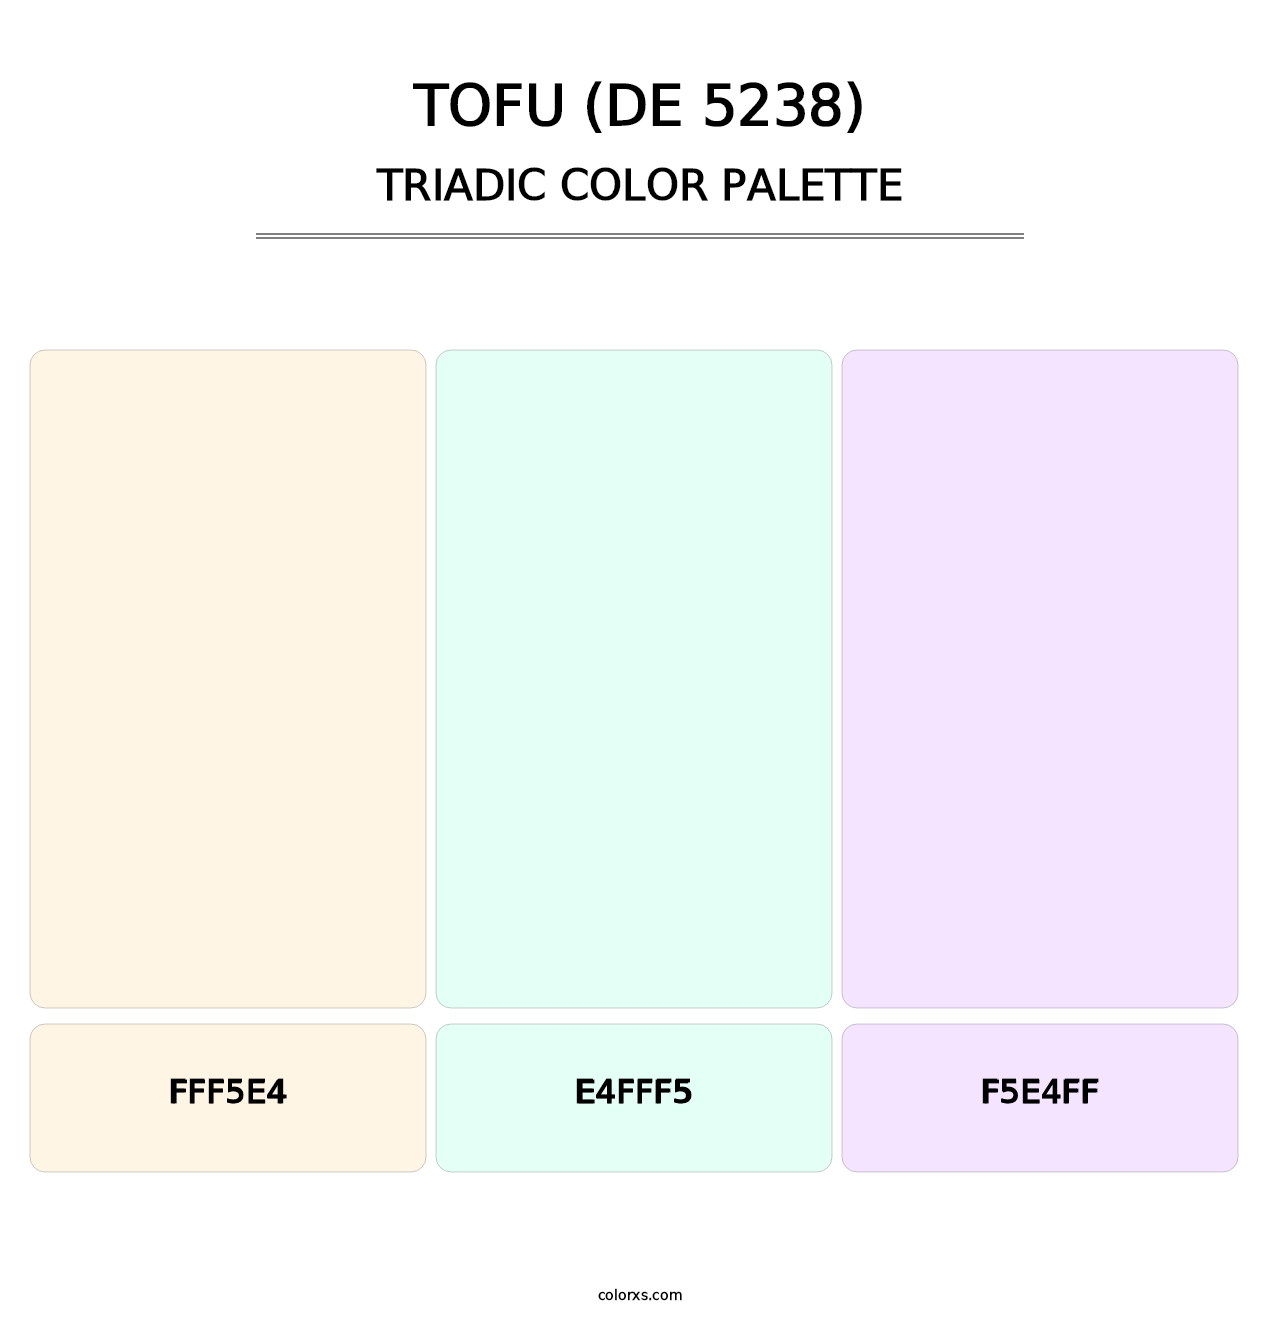 Tofu (DE 5238) - Triadic Color Palette